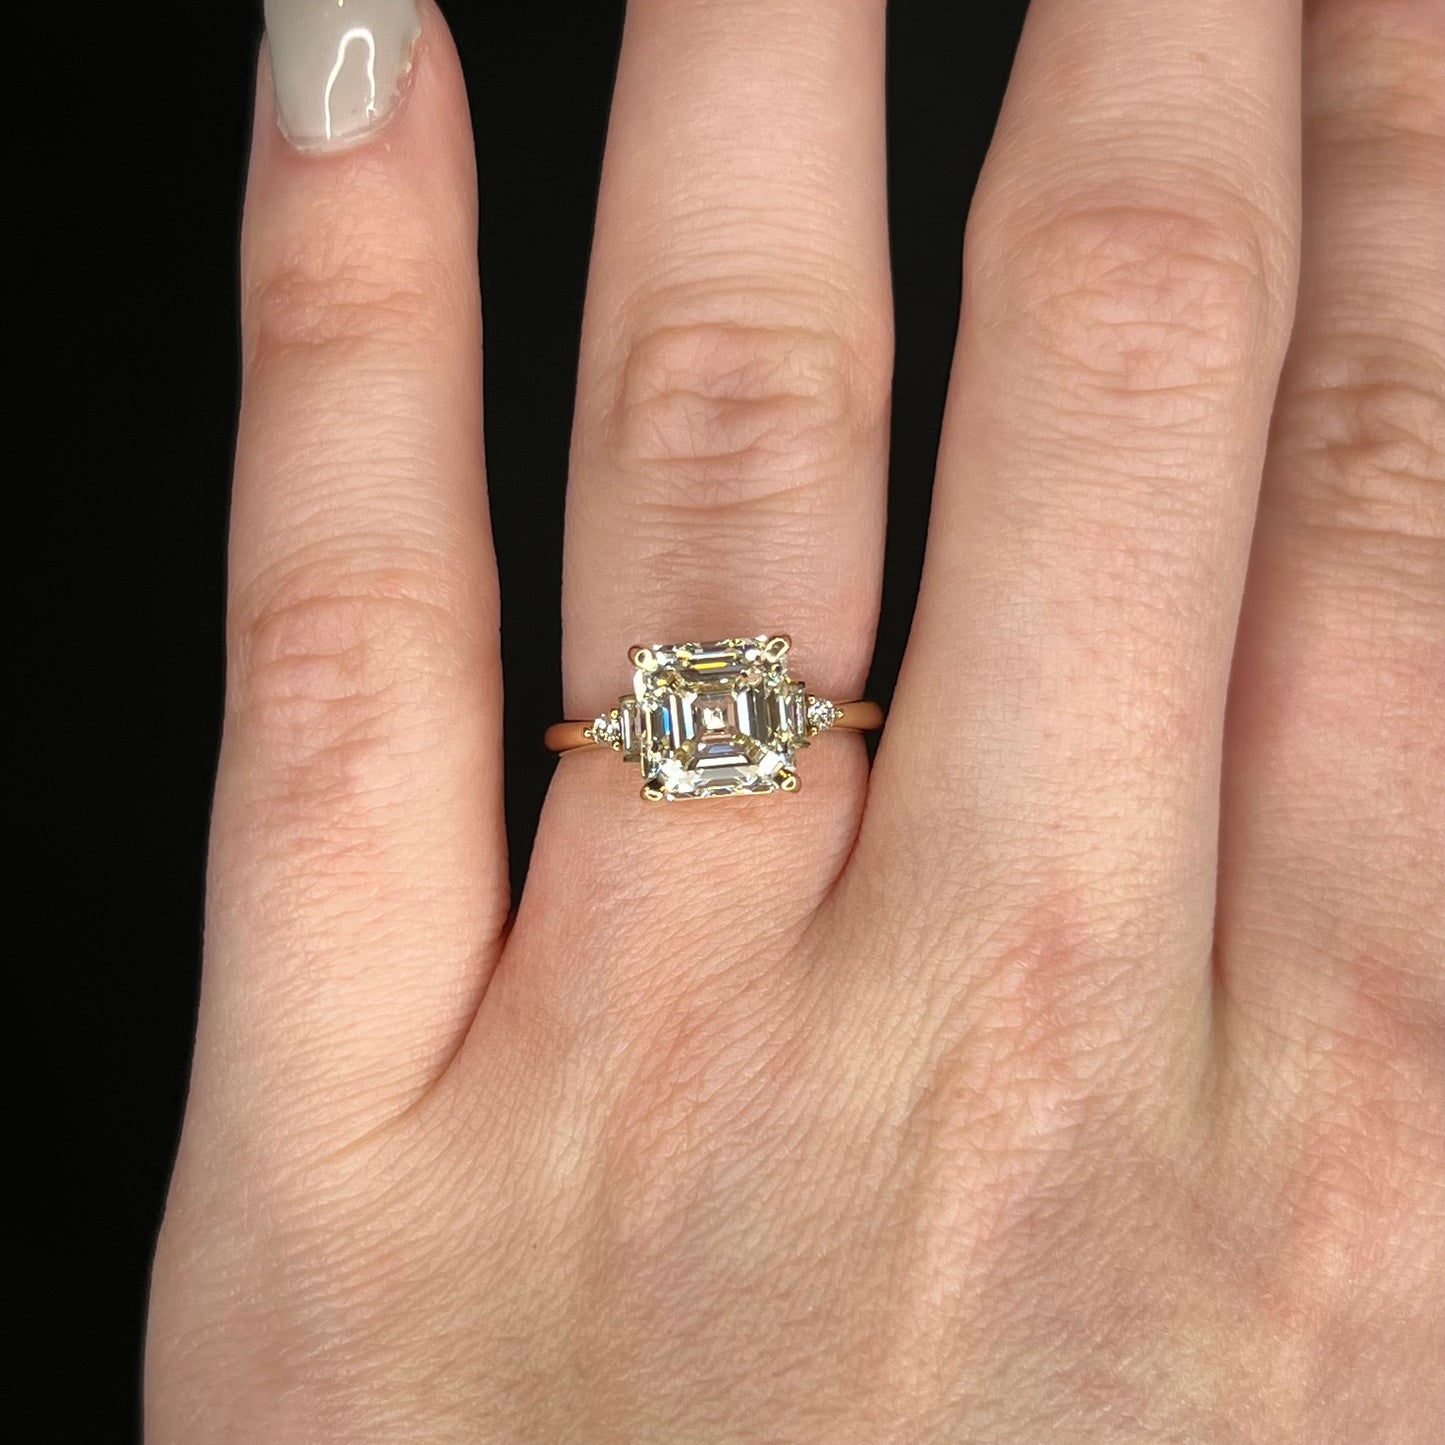 4.01 GIA Asscher Cut Diamond Engagement Ring in 14k Yellow Gold